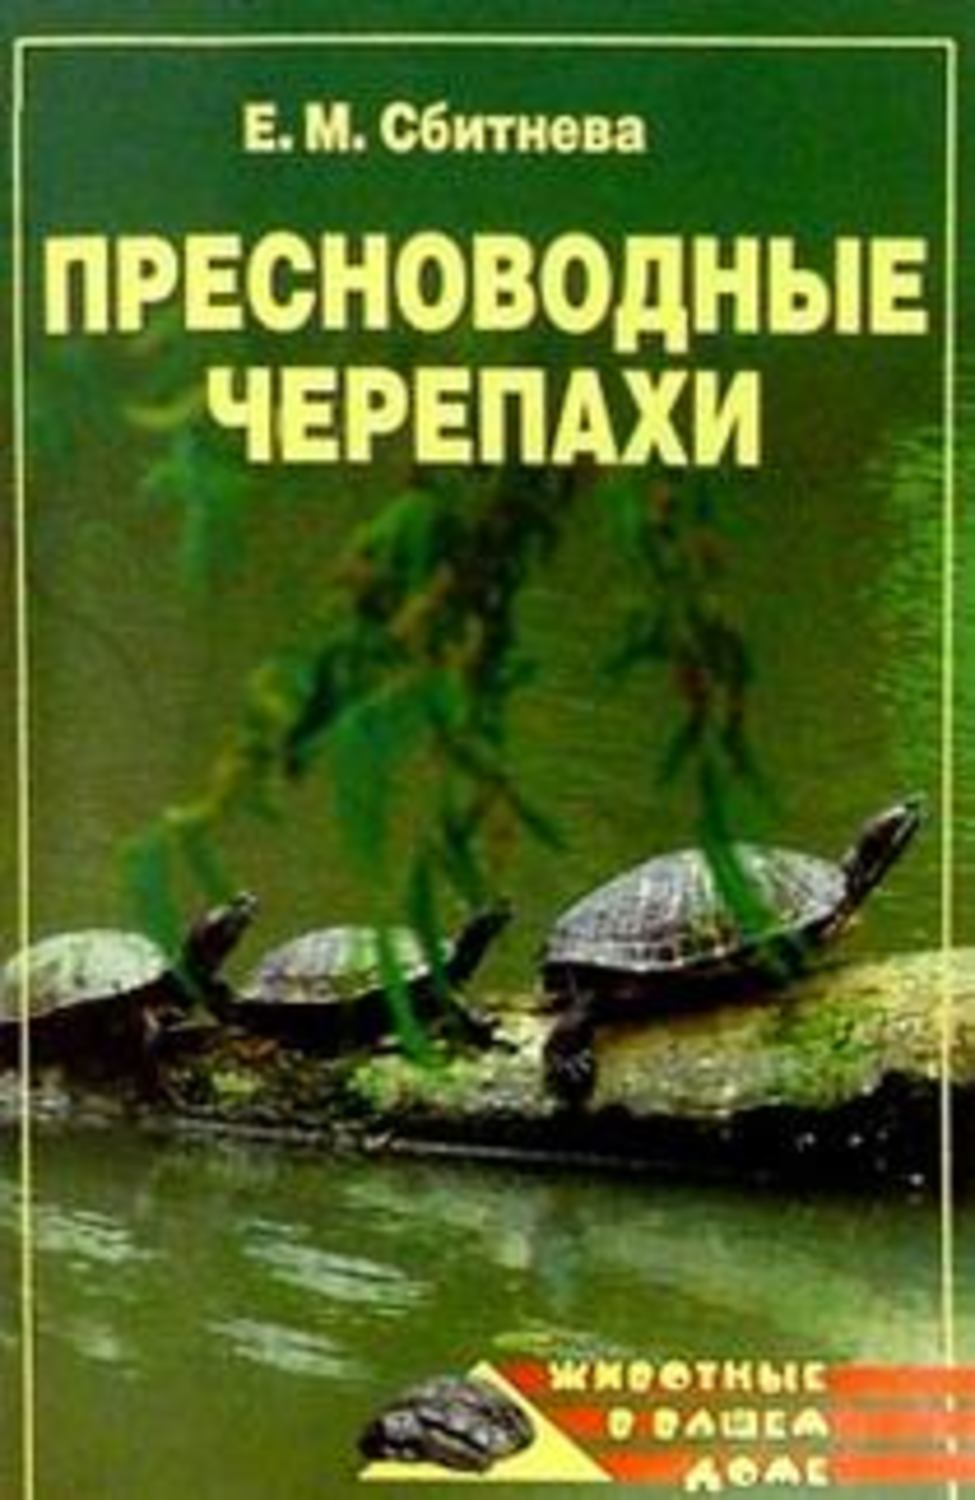 Сбитнева Евгения Михайловна - «Пресноводные черепахи»